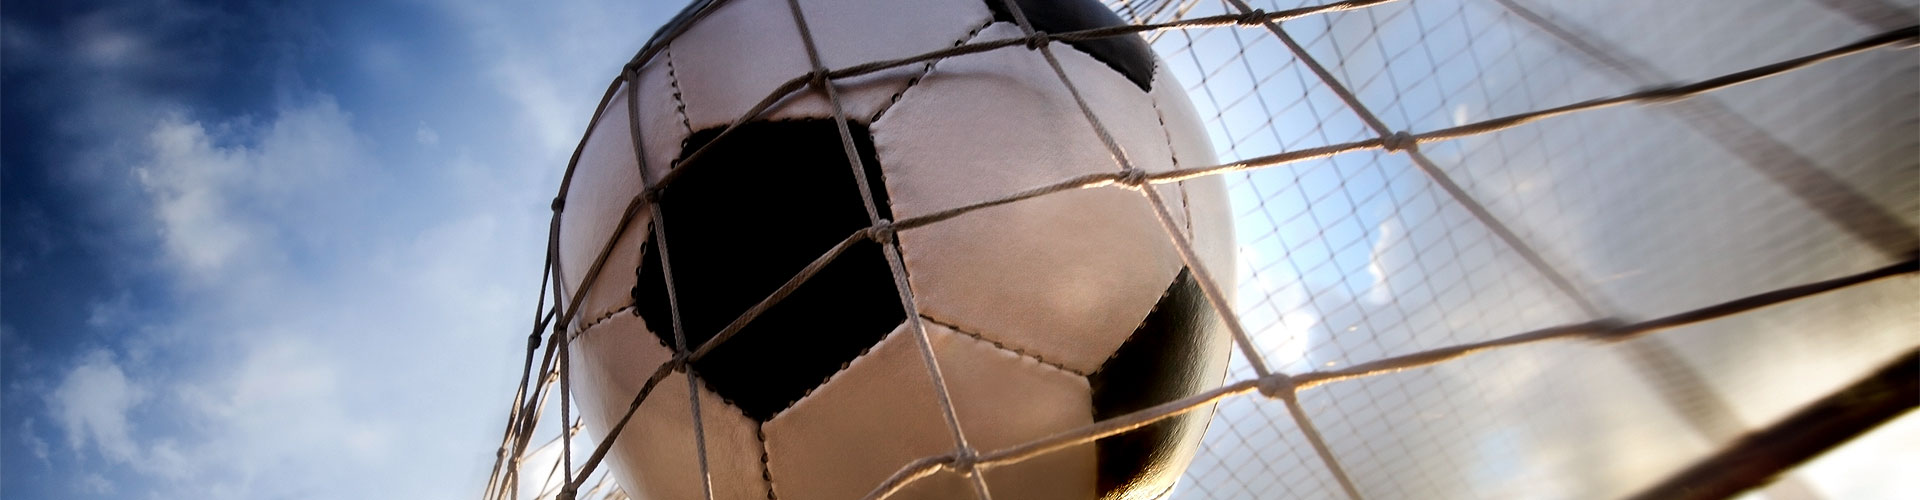 Ver la Eurocopa 2020 de fútbol en vivo en Torres de Arriba
        
        


	    
           
           


          
          
          
